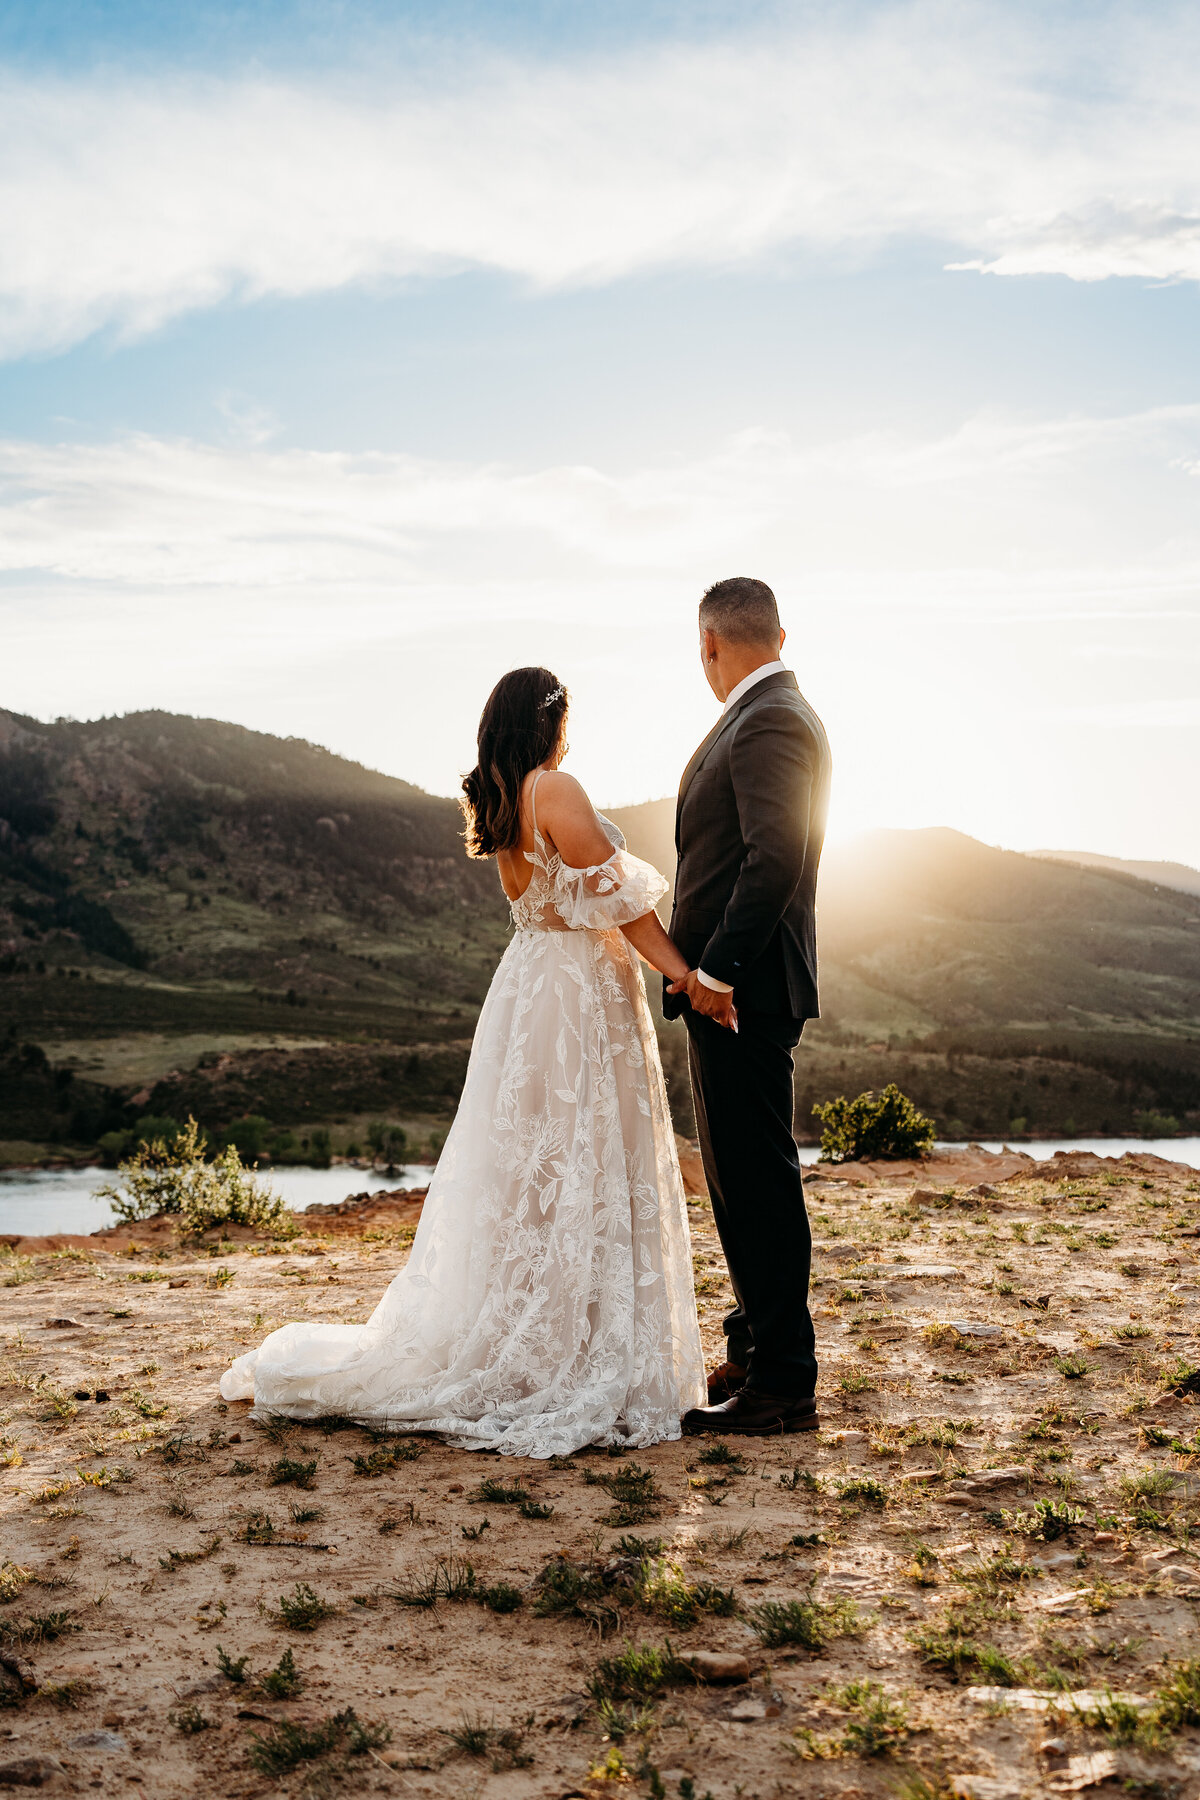 Wedding photographer Estes Park Colorado